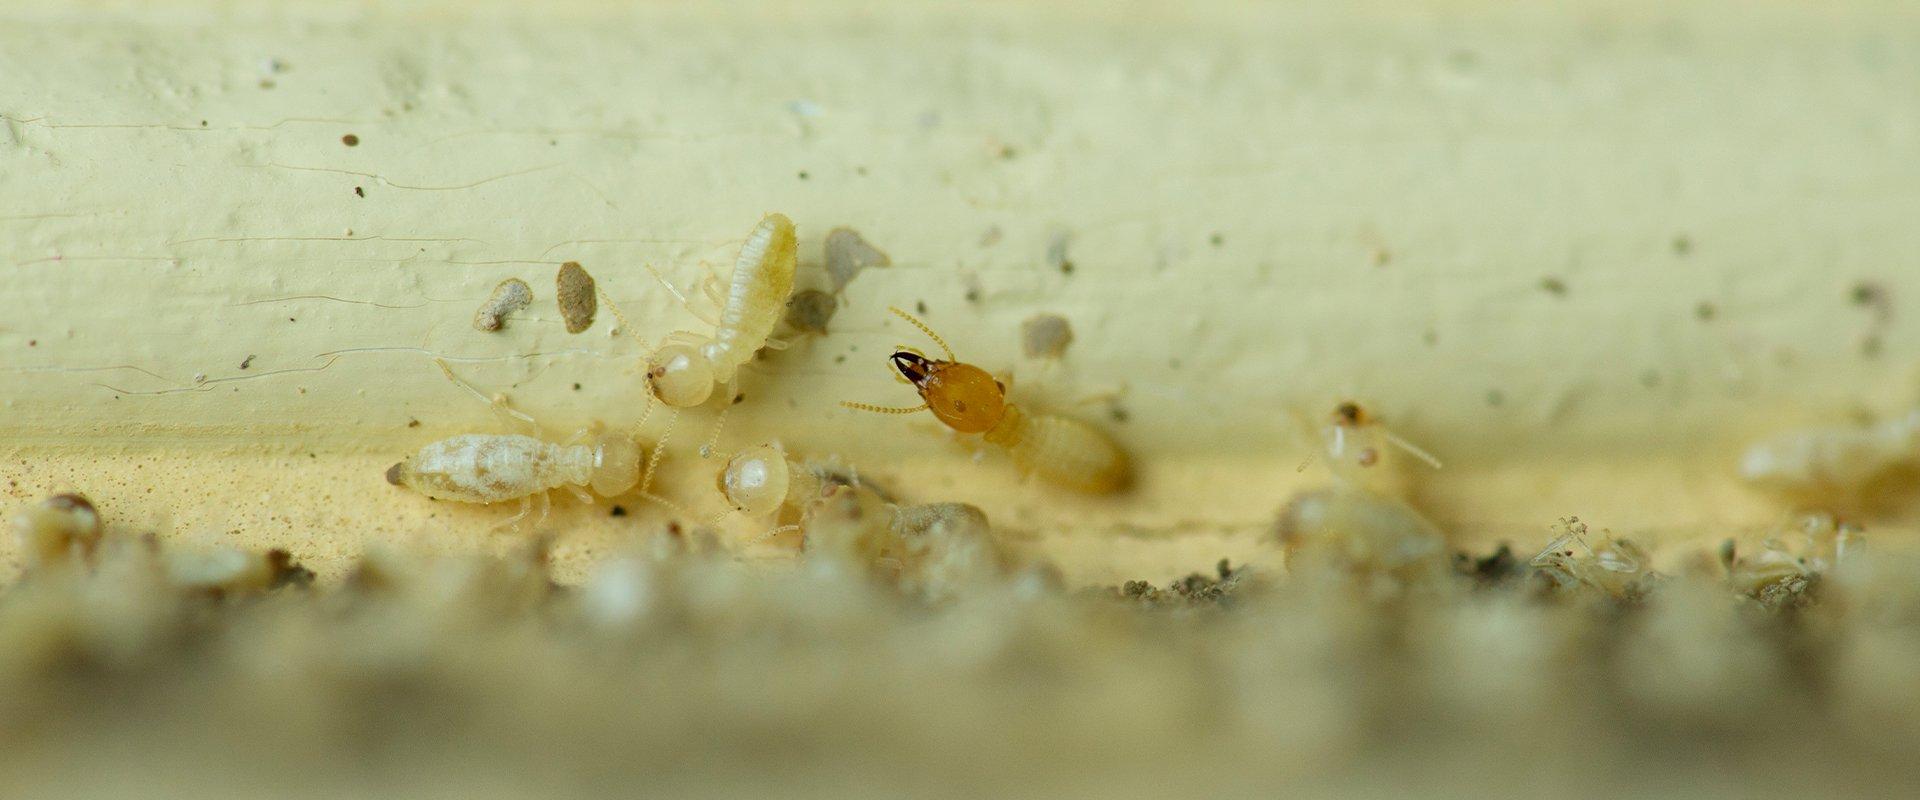 termites eatig wood